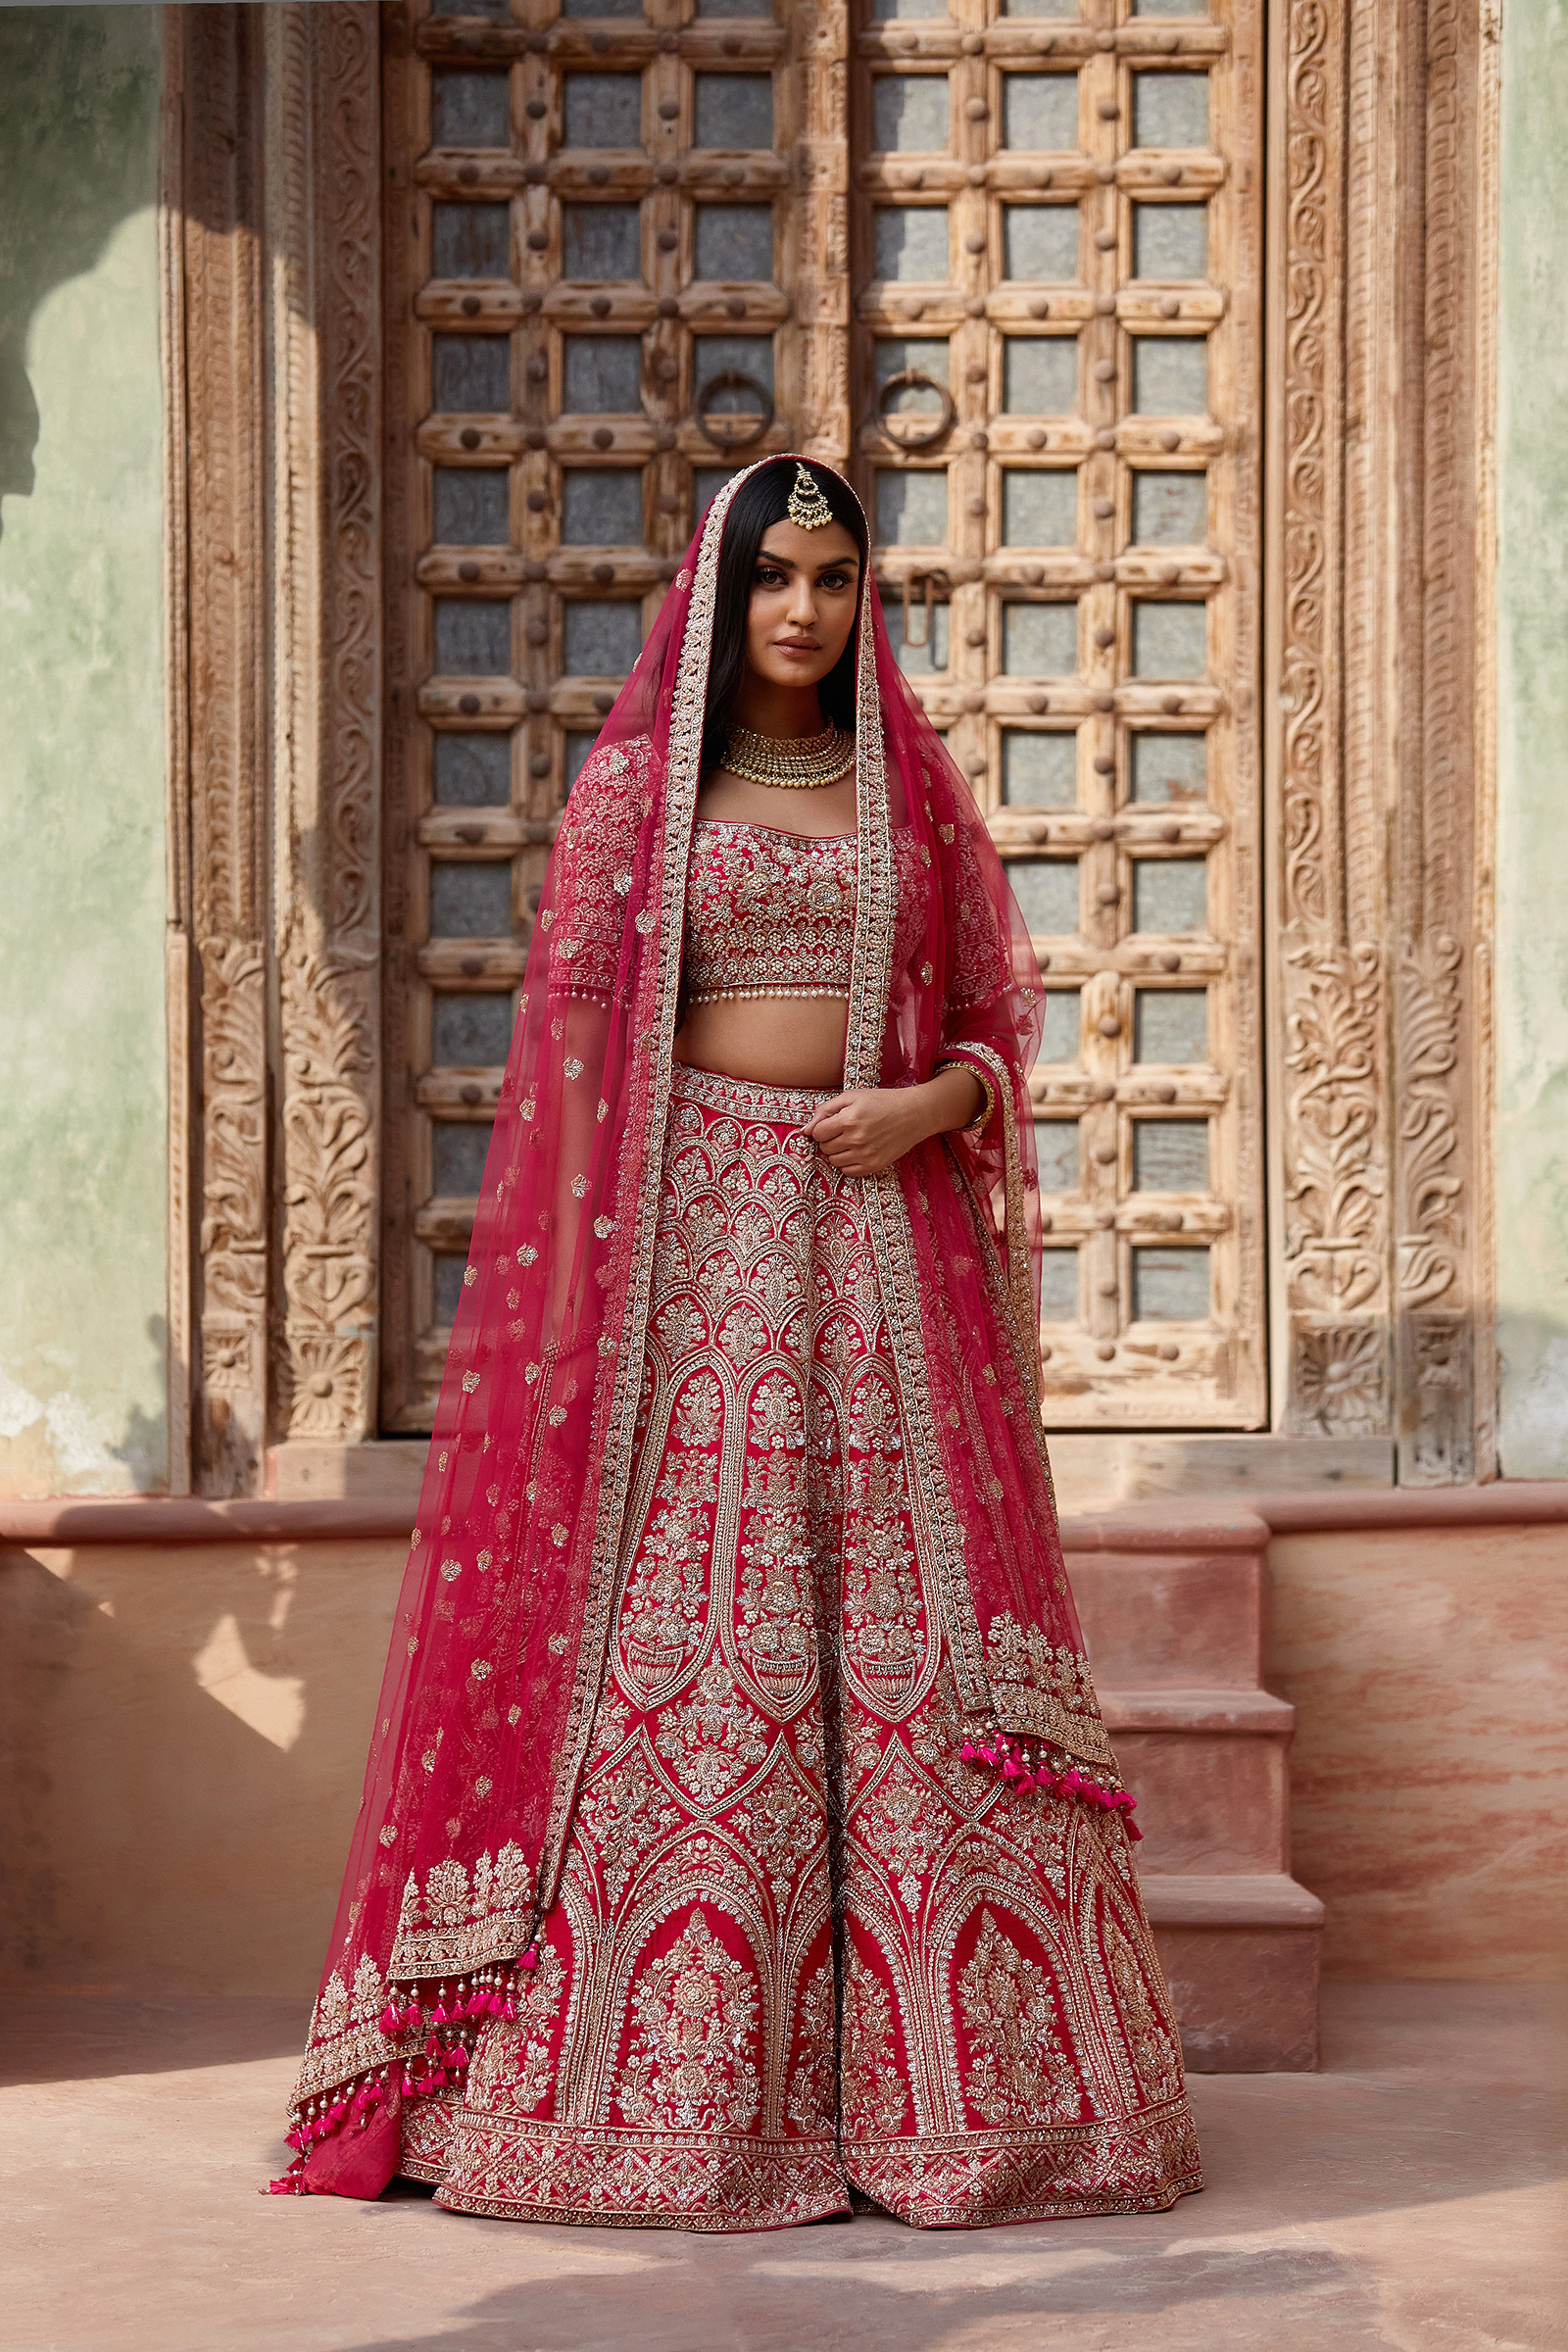 Indian Designer Red Bridal Lehenga Choli/wedding Wear Lehenga Choli for  Women/bridal Wear Red Lehenga Choli/women's Ethnic Clothing - Etsy